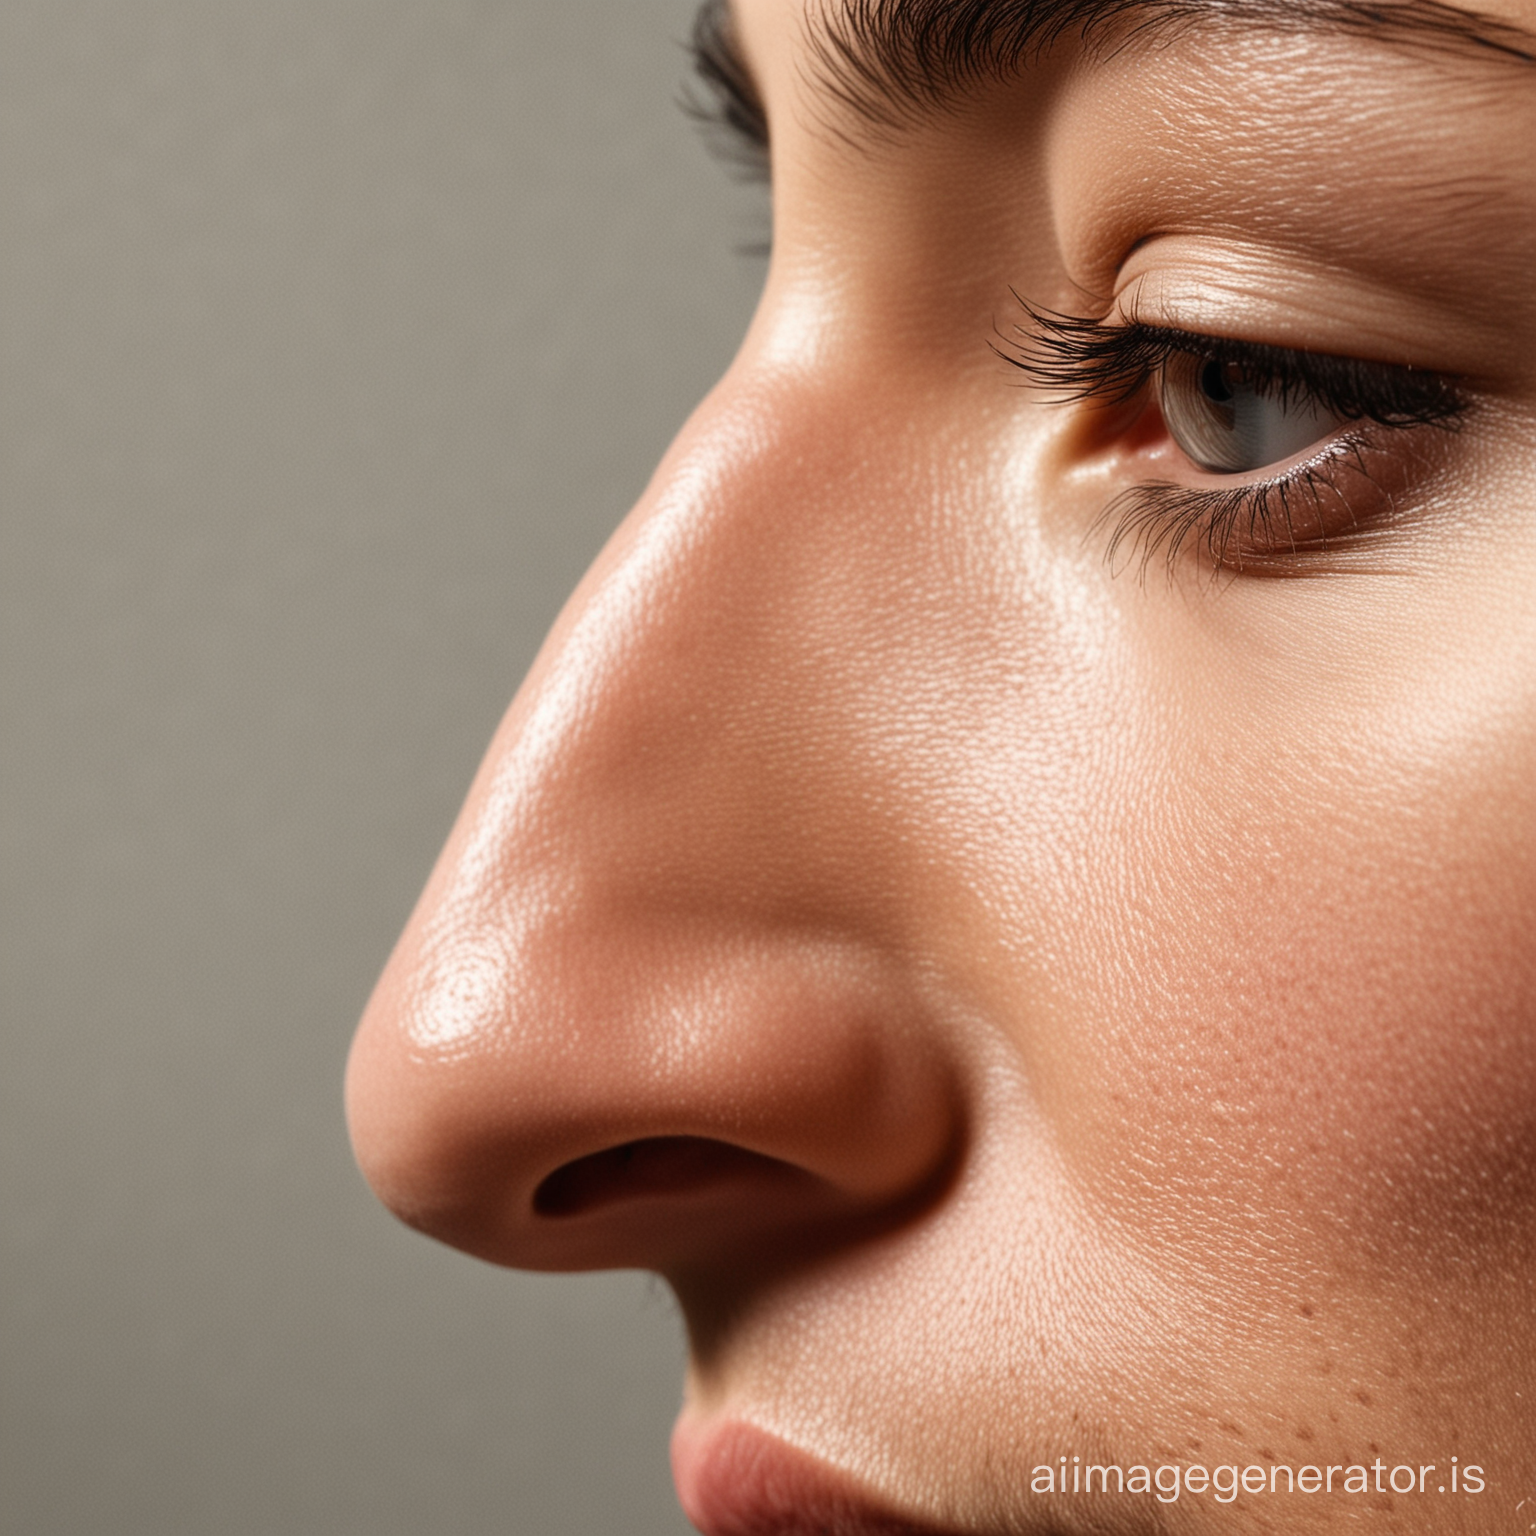 нос в профиль с горбинкой и отражение носа без горбинки